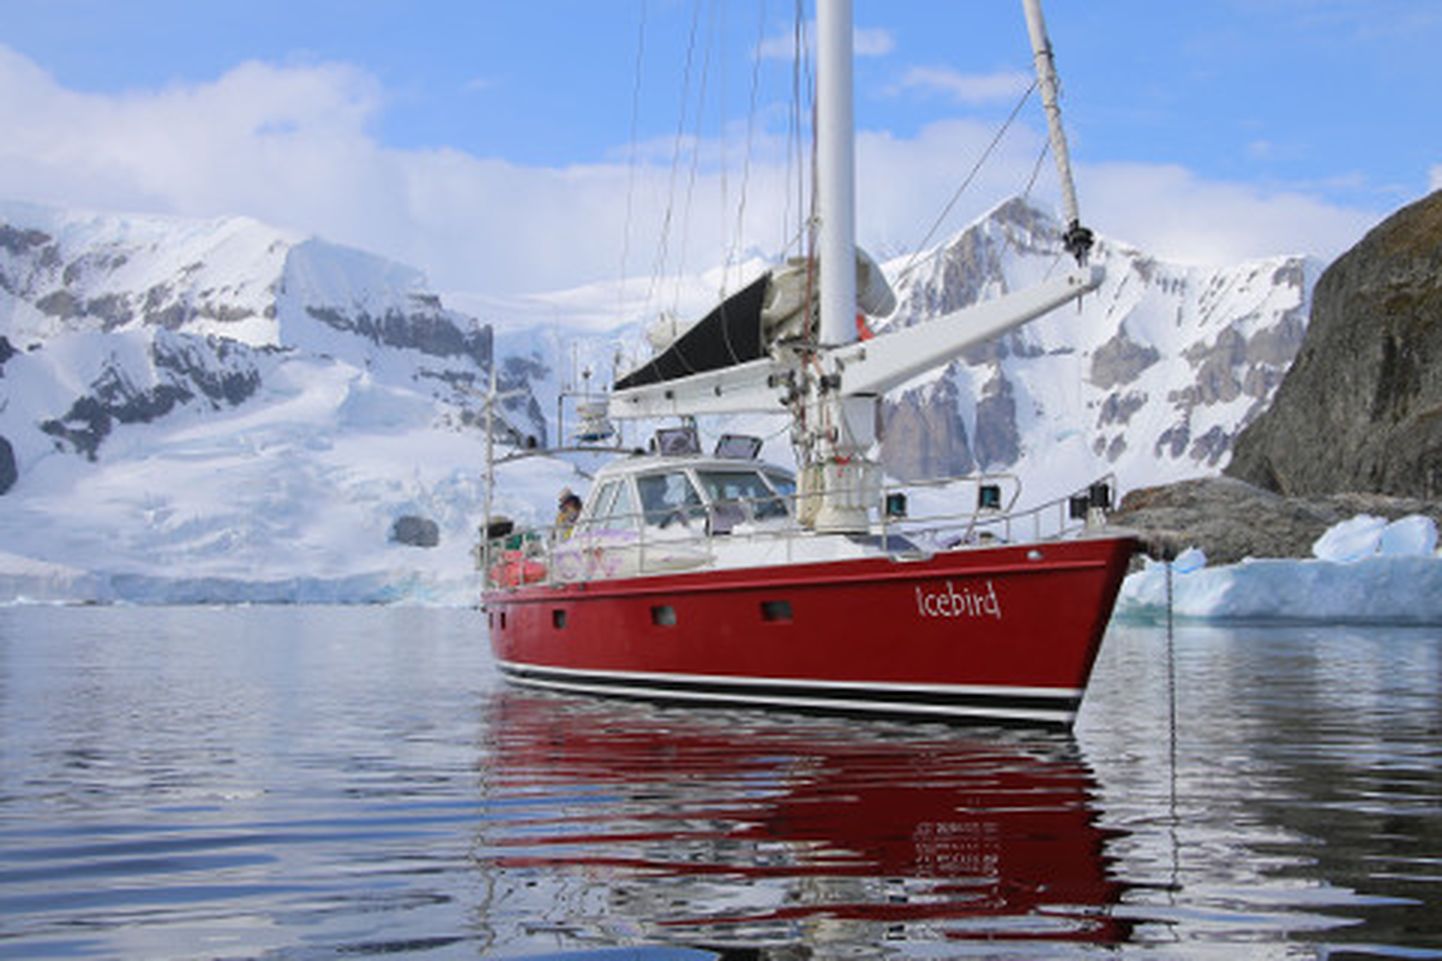 Tiit läks teele kaunil, veidi üle 16 meetri pikkusel purjelaeval nimega Icebird, kus oli kokku üheksa inimest, kellest kuus olid reisijad.